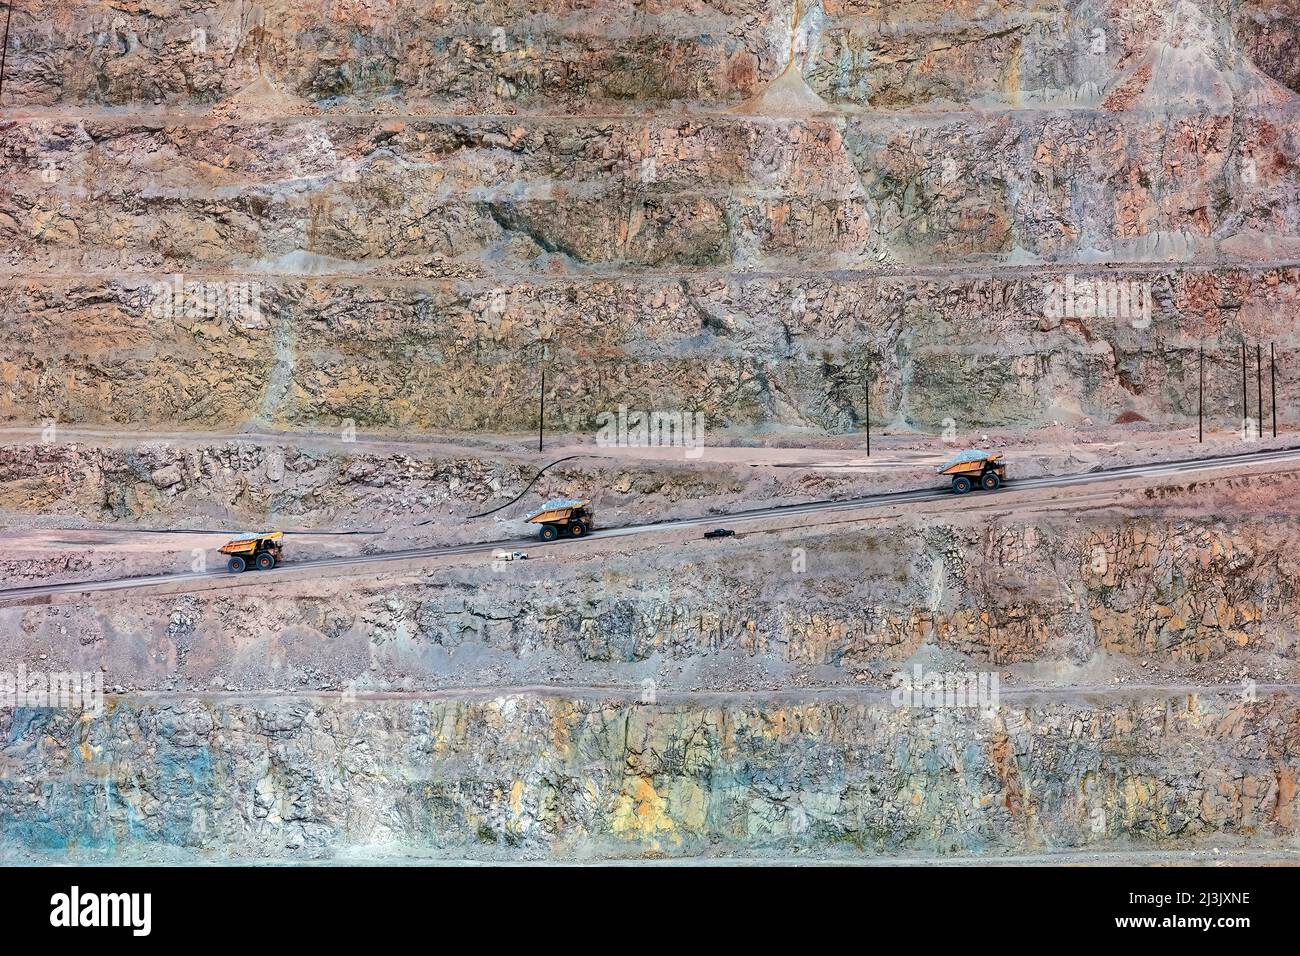 L'extraction massive de camions à benne - Mine de cuivre Morenci, Arizona plus importante mine de cuivre en Amérique du Nord Banque D'Images